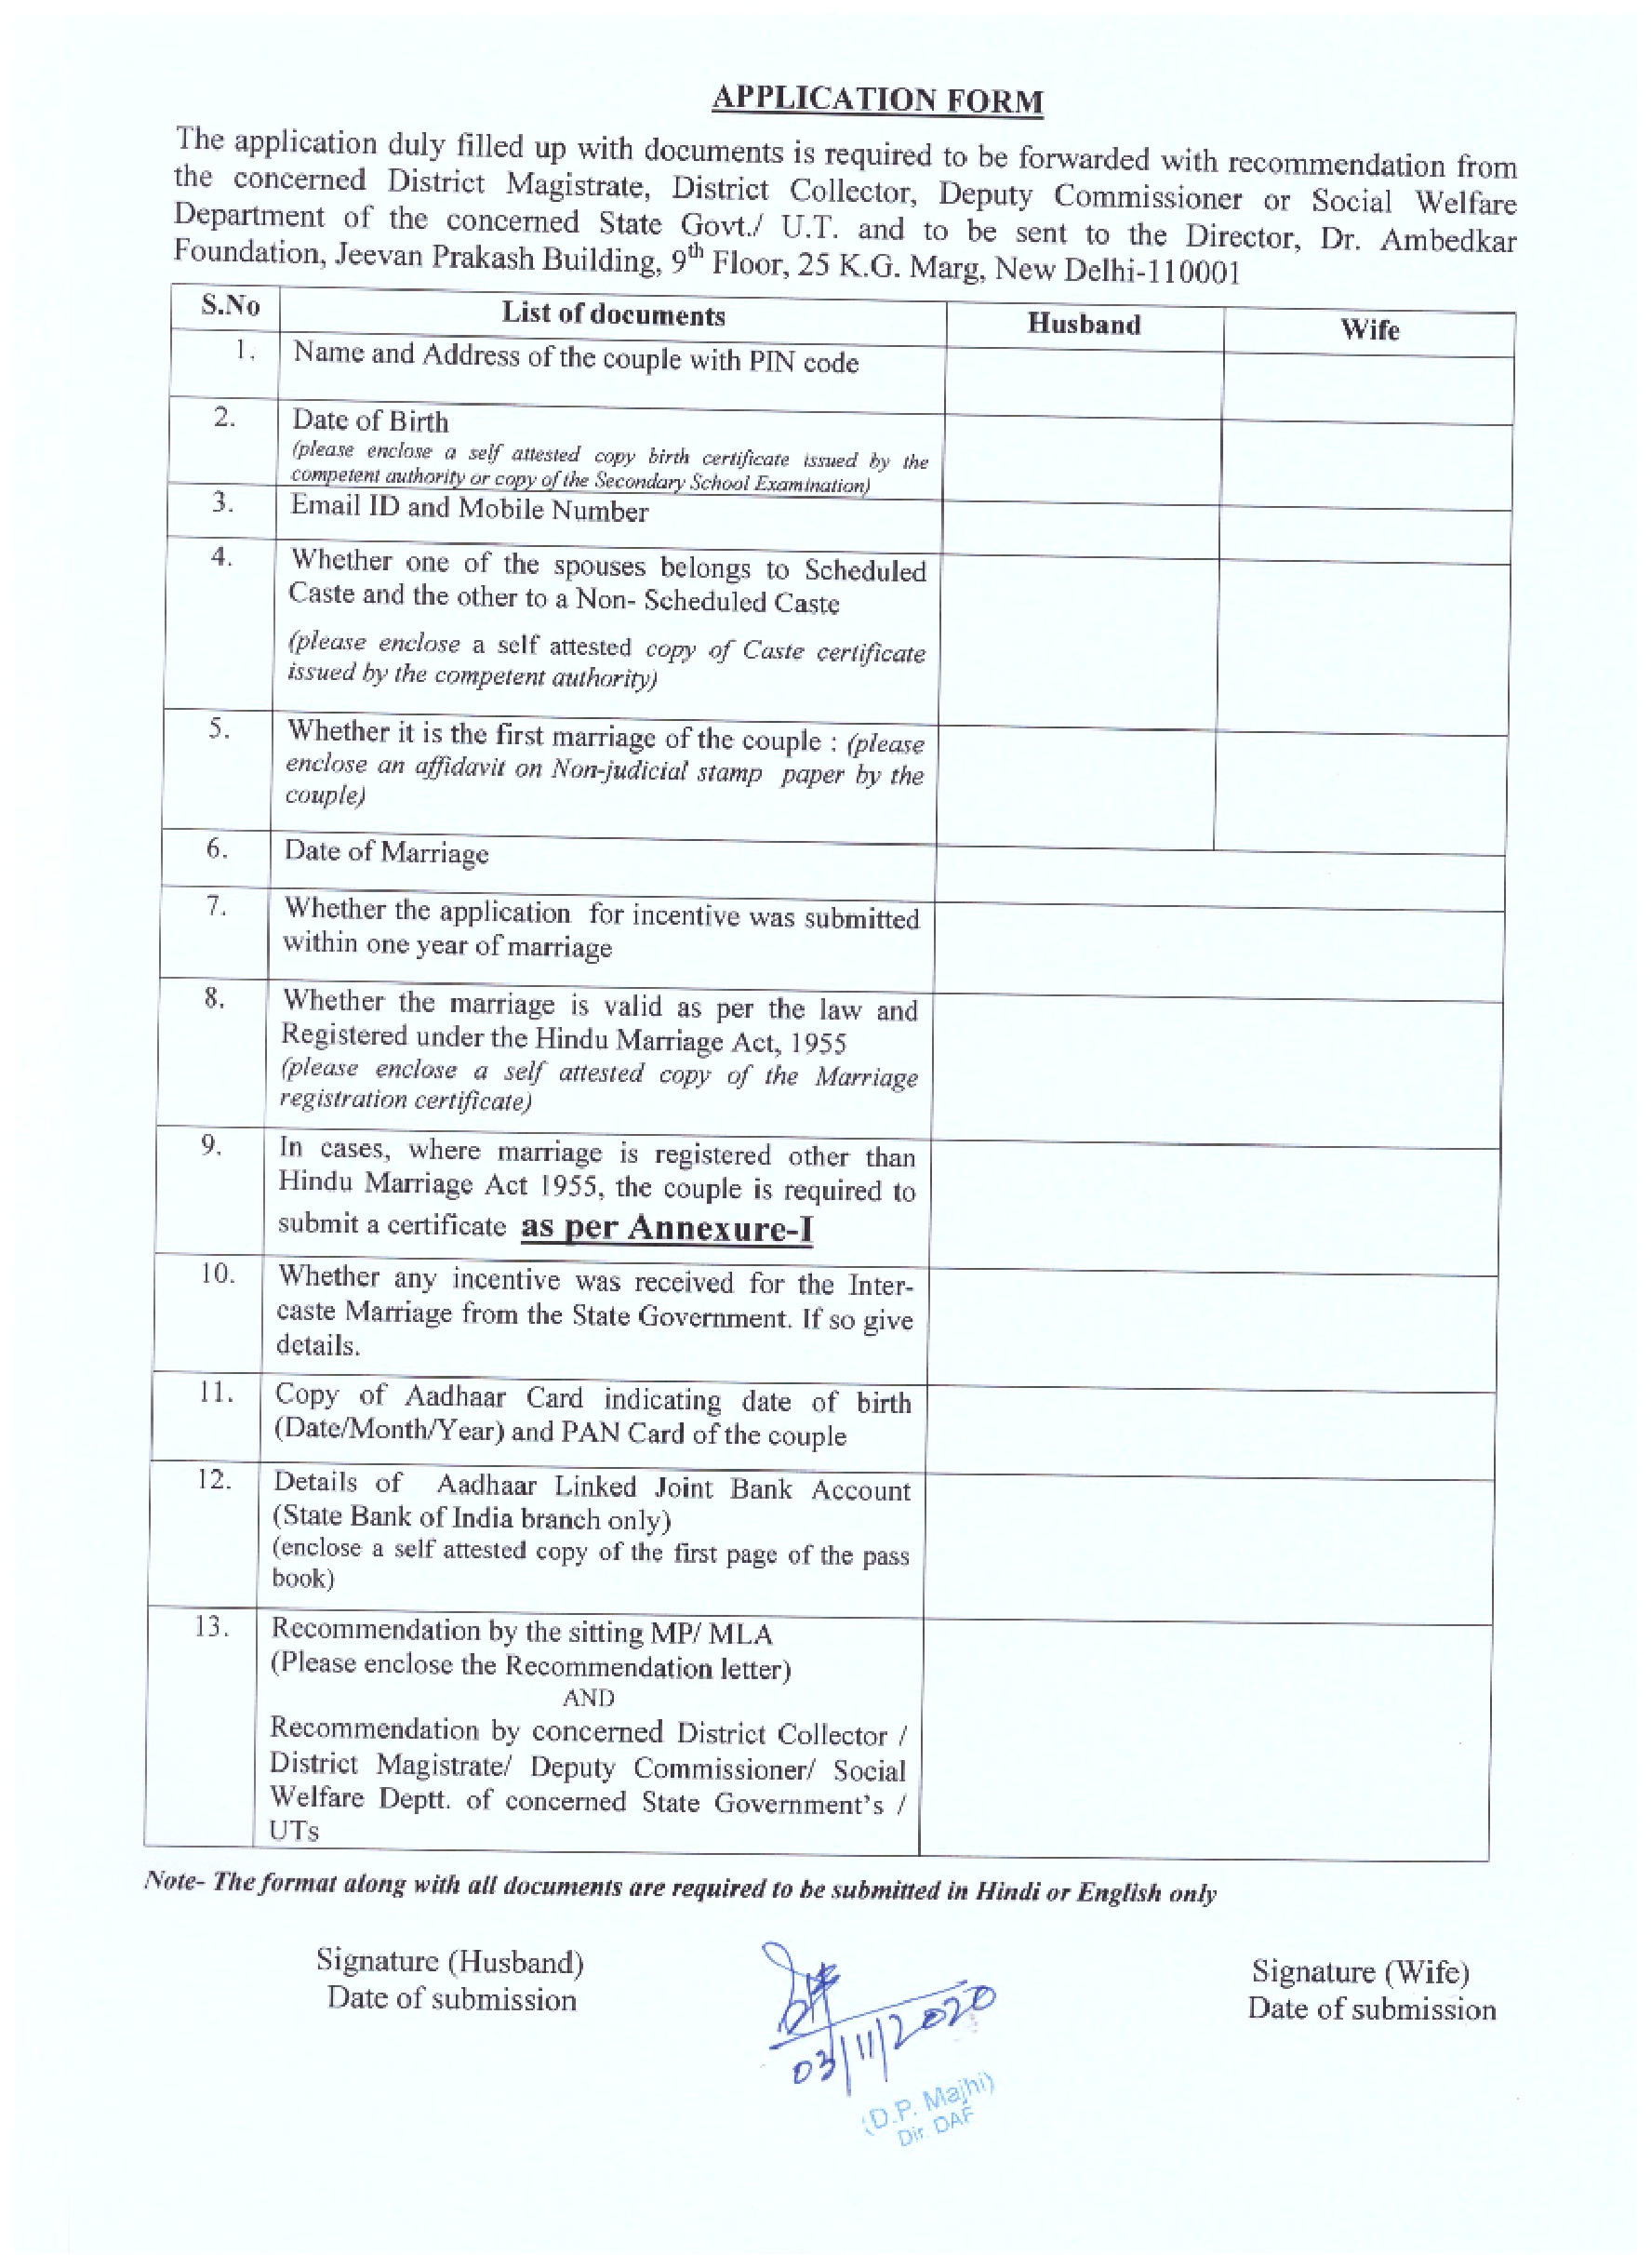 Dr ambedkar foundation application form